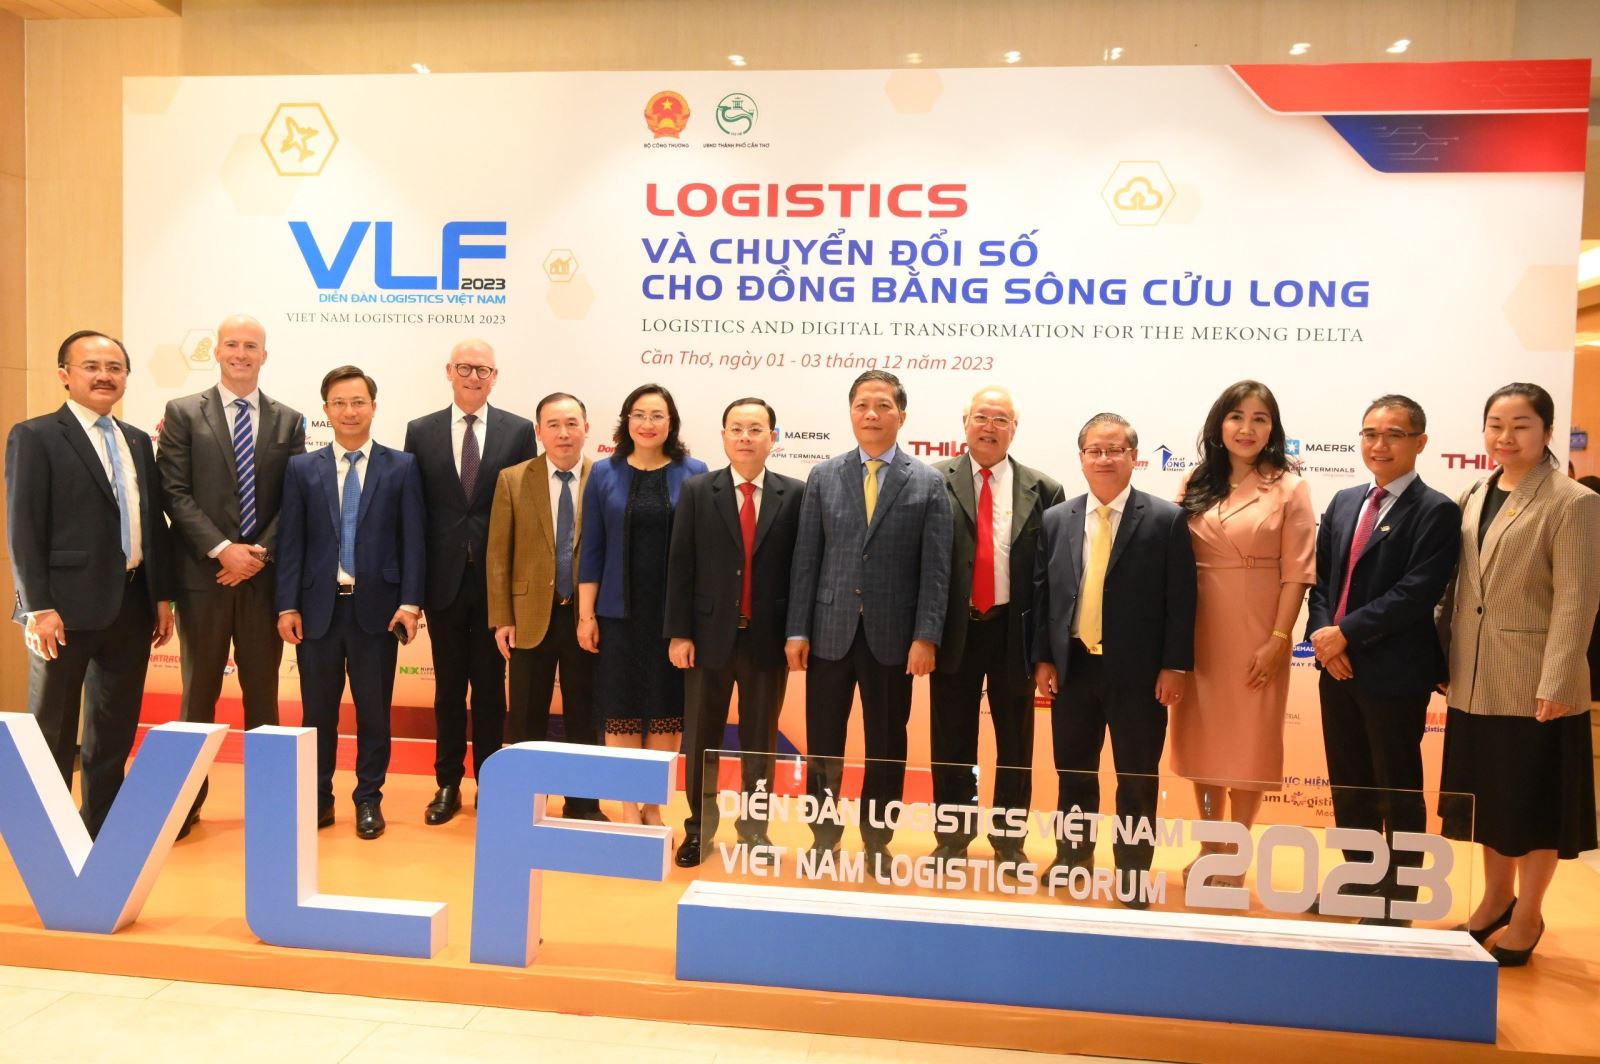 Đồng chí Trần Tuấn Anh, Ủy viên Bộ Chính trị, Trưởng Ban Kinh tế Trung ương và các đại biểu tham dự Diễn đàn Logistics Việt Nam 2023 (VLF) chụp ảnh lưu niệm.